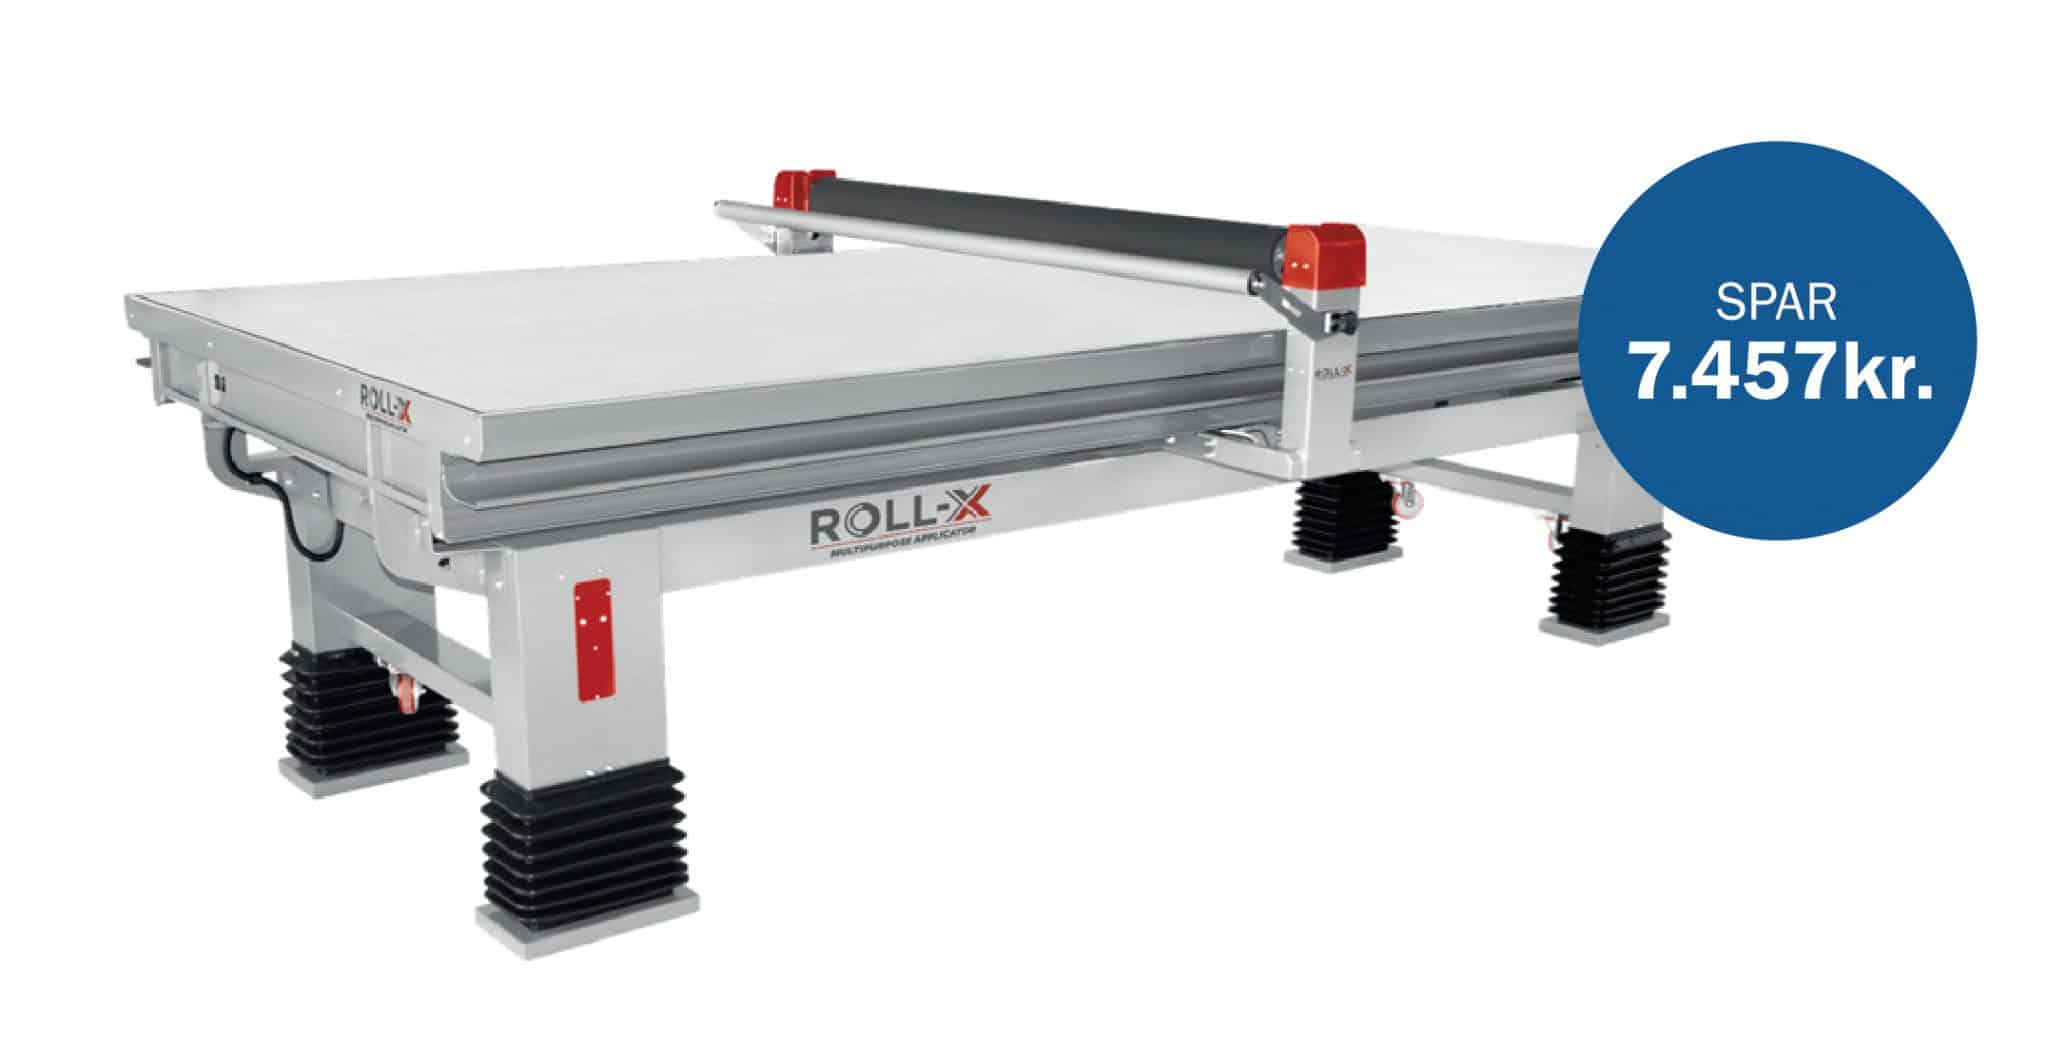 Fantastiske RollsRoller og Roll-X tilbud! RollX Pro scaled vikiallo